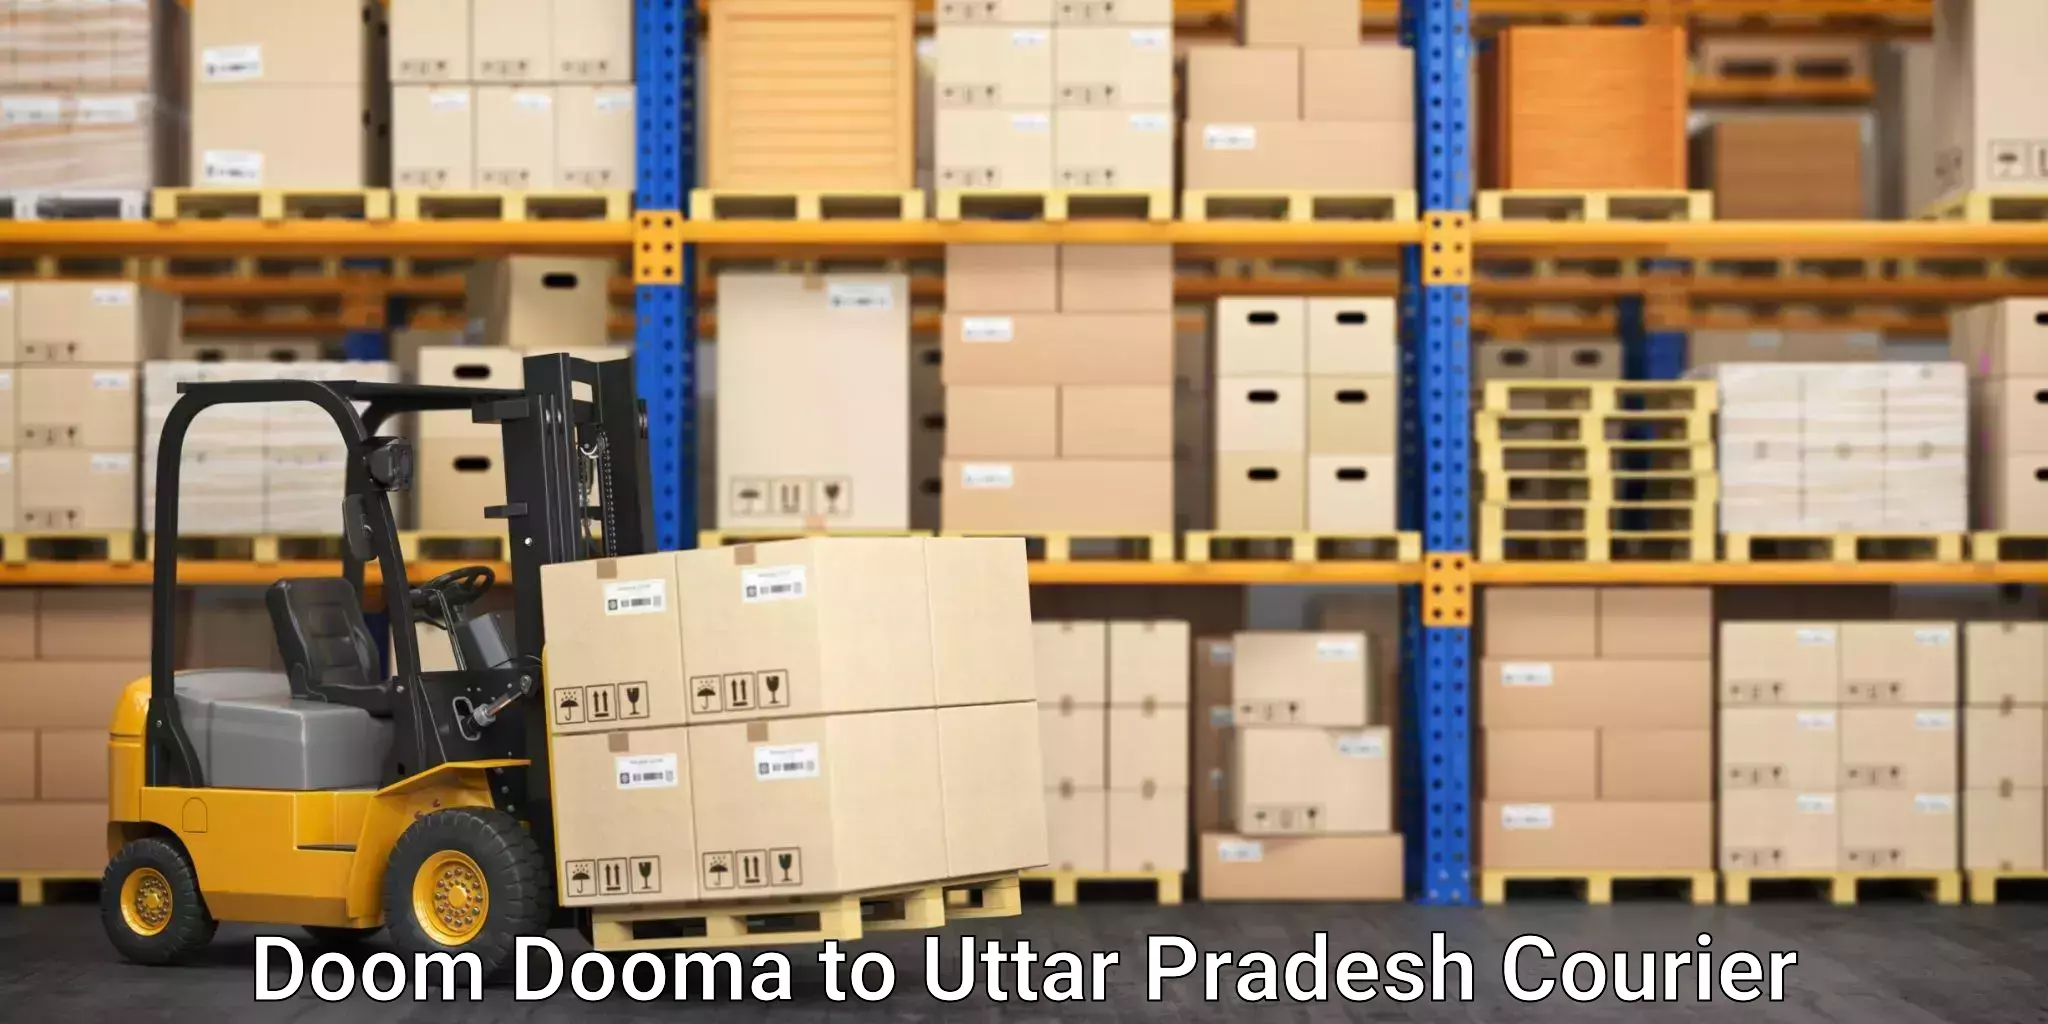 Courier service innovation Doom Dooma to Nizamabad Azamgarh